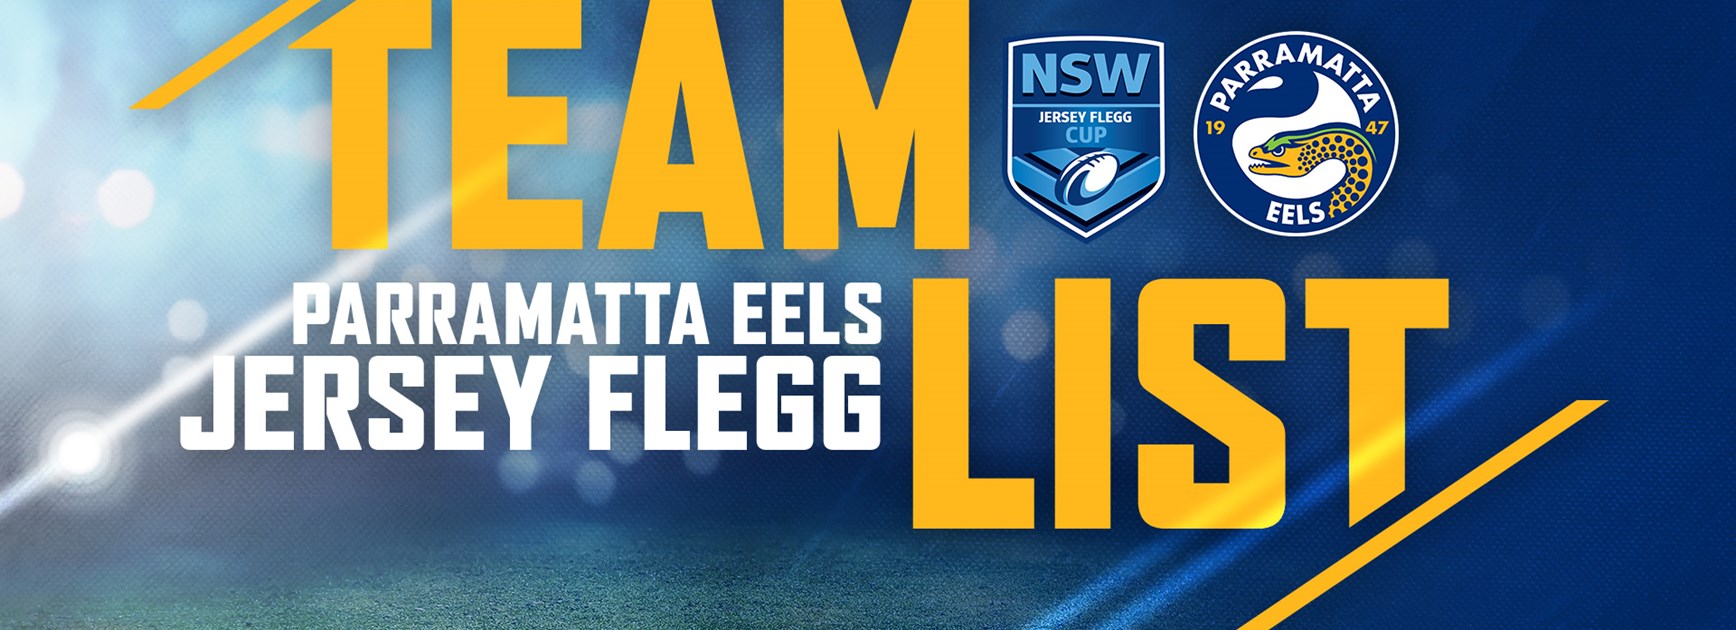 Eels Jersey Flegg Round 24 Team List